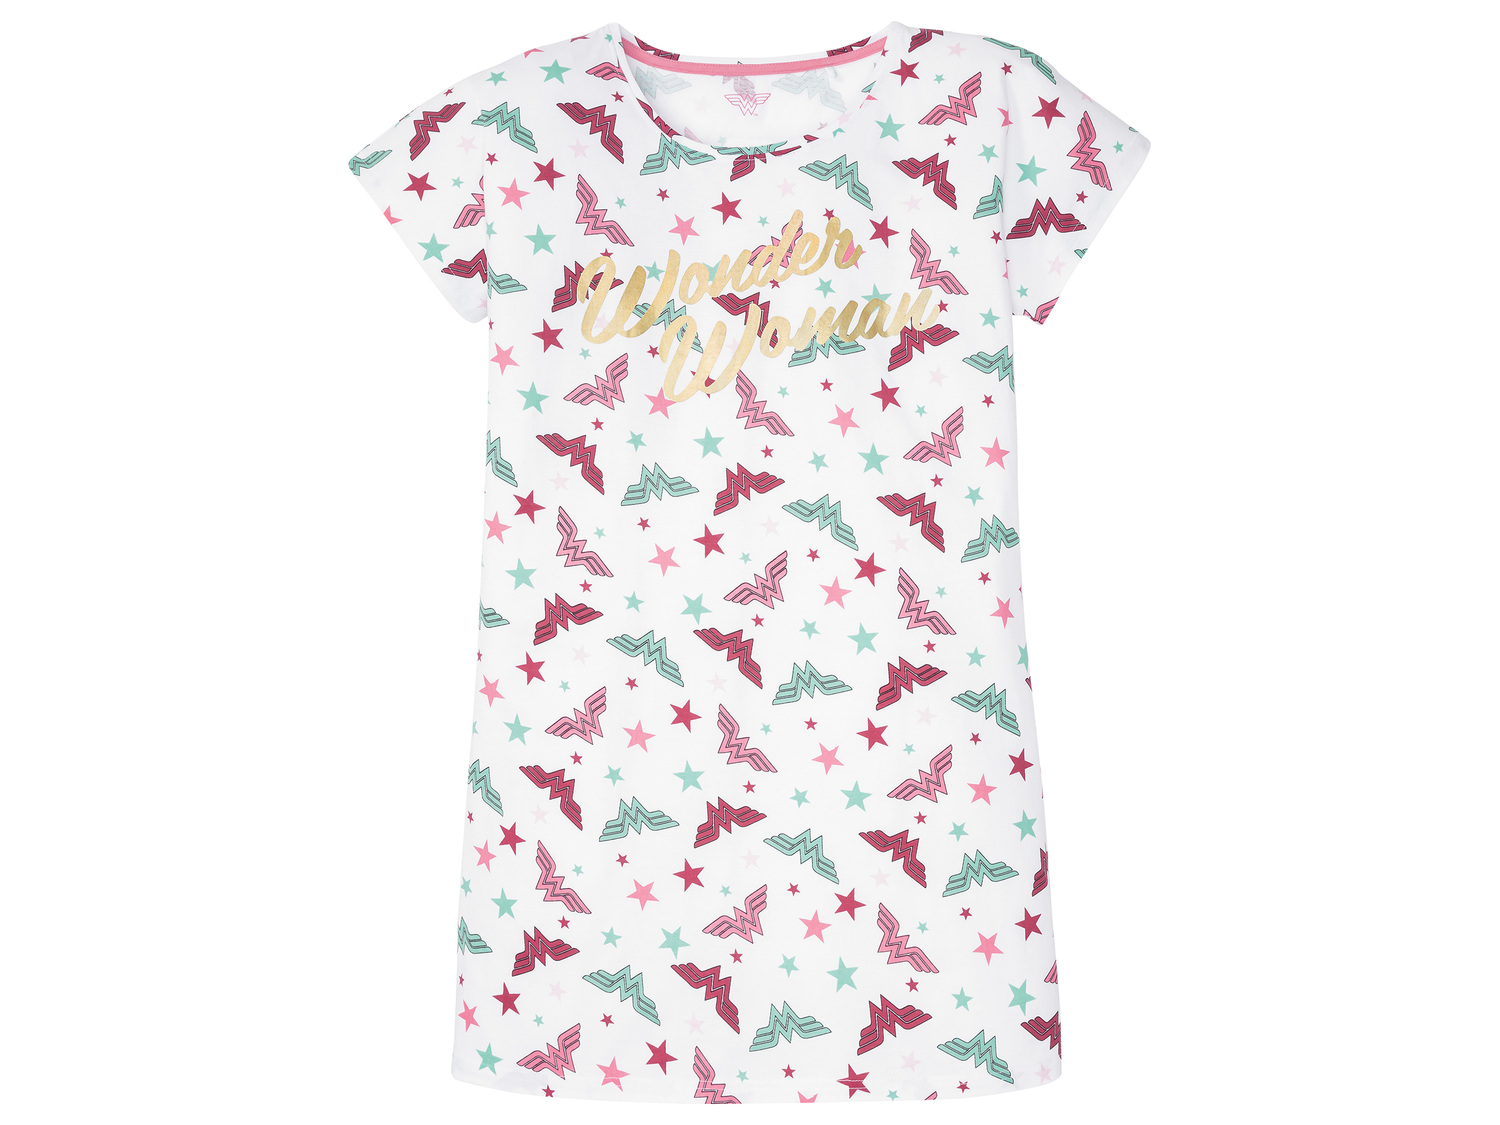 T-shirt long femme Pink Panther, Peanuts, le prix 5.99 € 
- Du S au XL selon ...